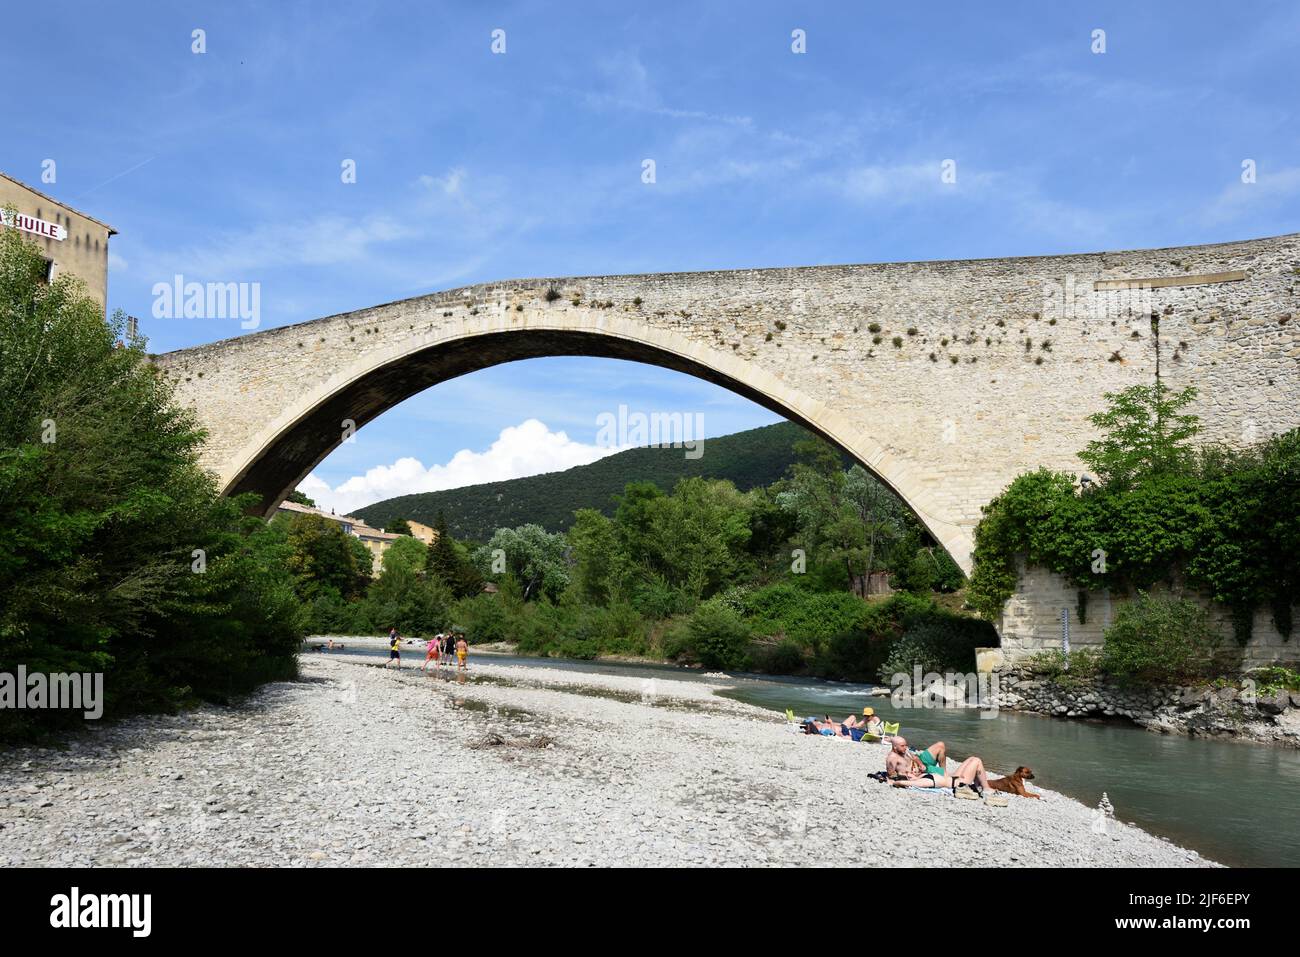 Les touristes se bronzent et se détendent le long de la rivière Aigues sous le pont médiéval Single Span, connu sous le nom de pont romain, Nyons Drôme Provence France Banque D'Images